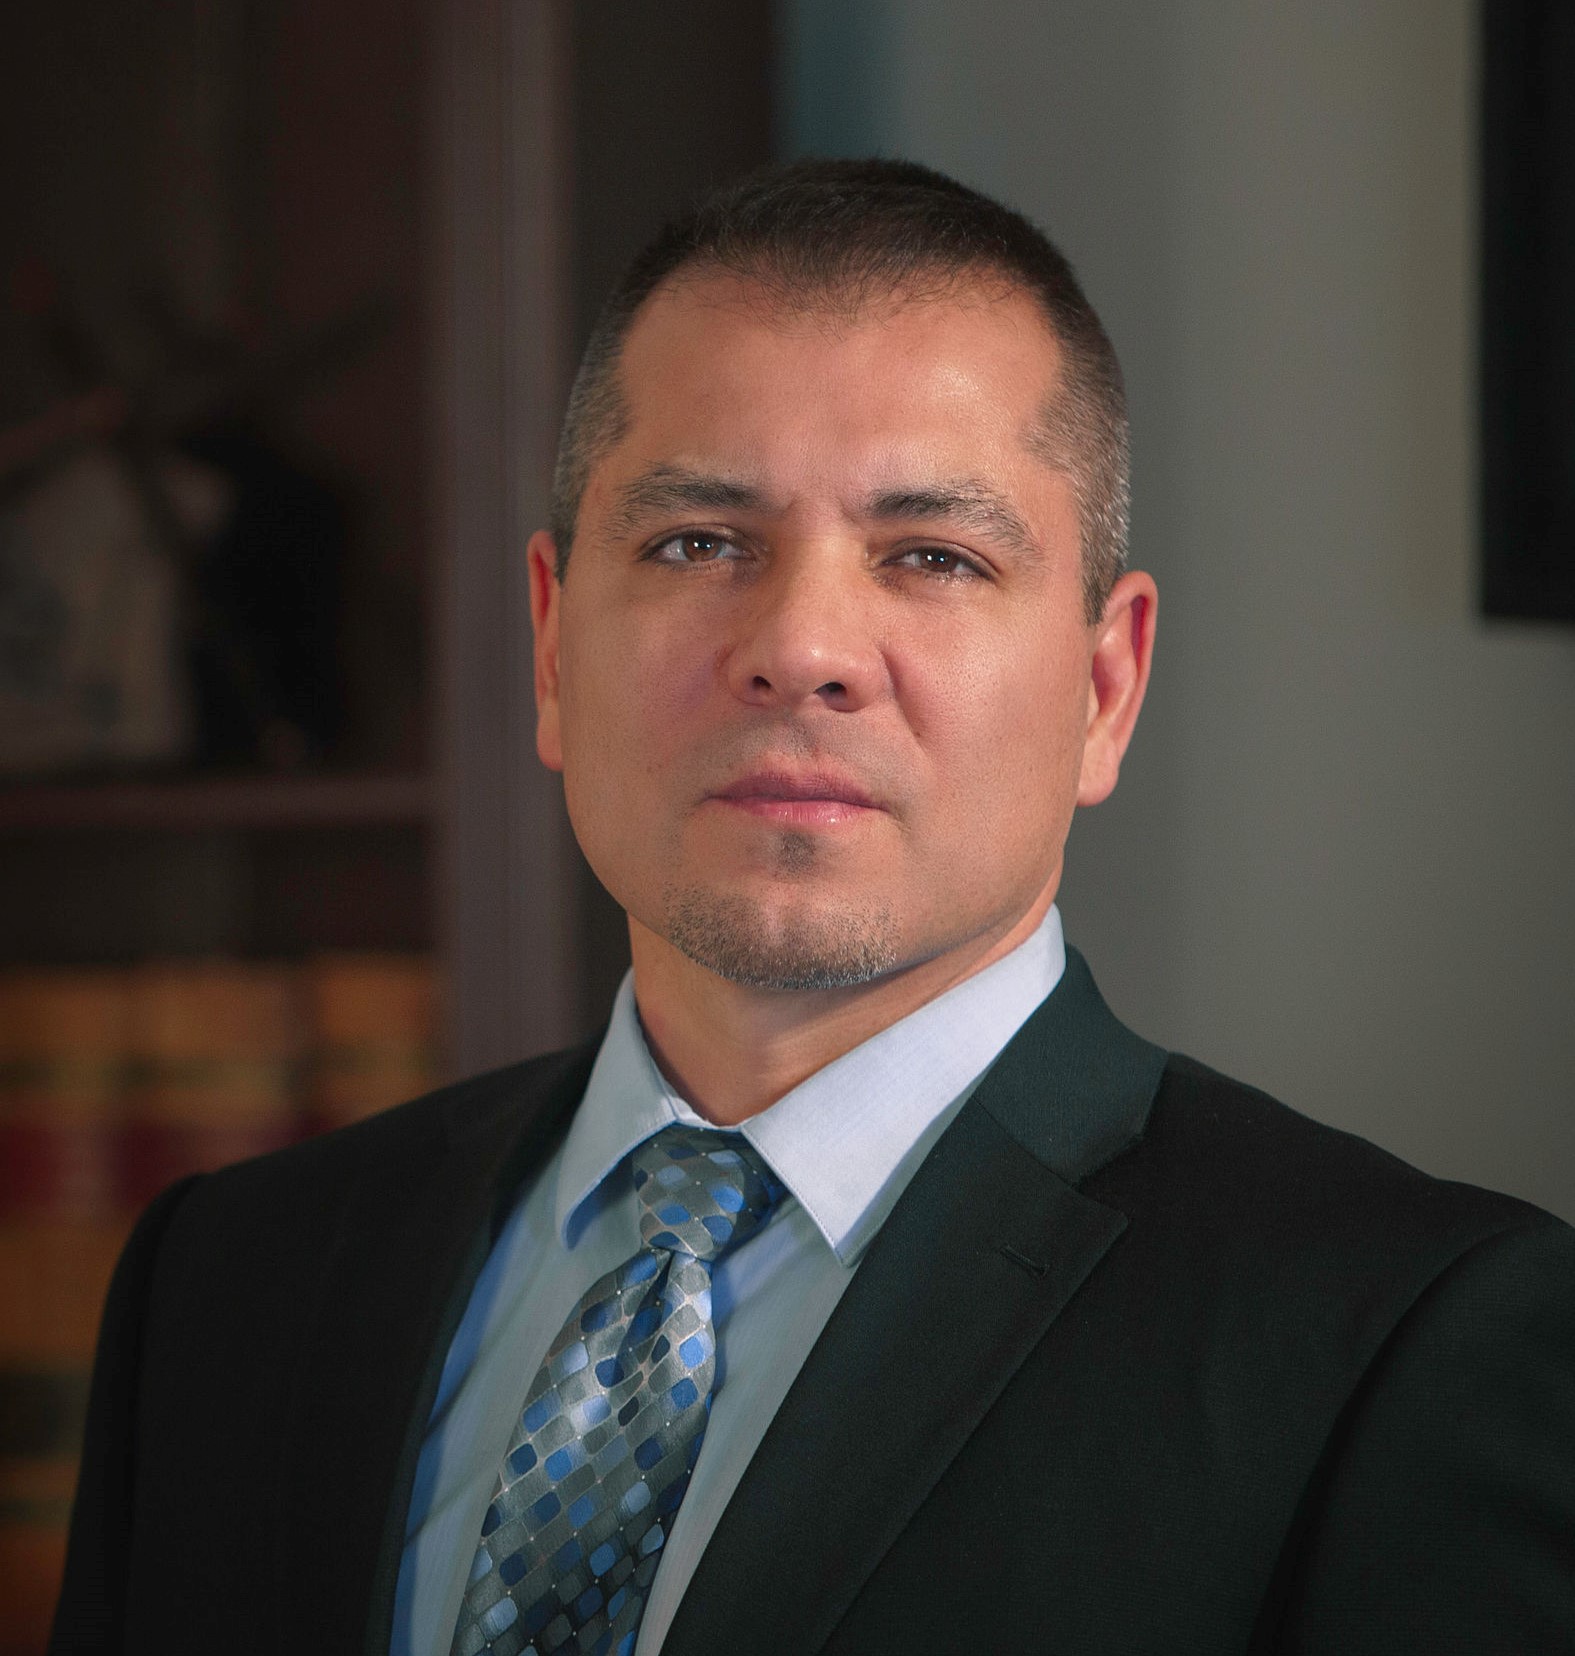 DUI Attorney Marc Grano - Mora County, NM - DUIAttorney.com